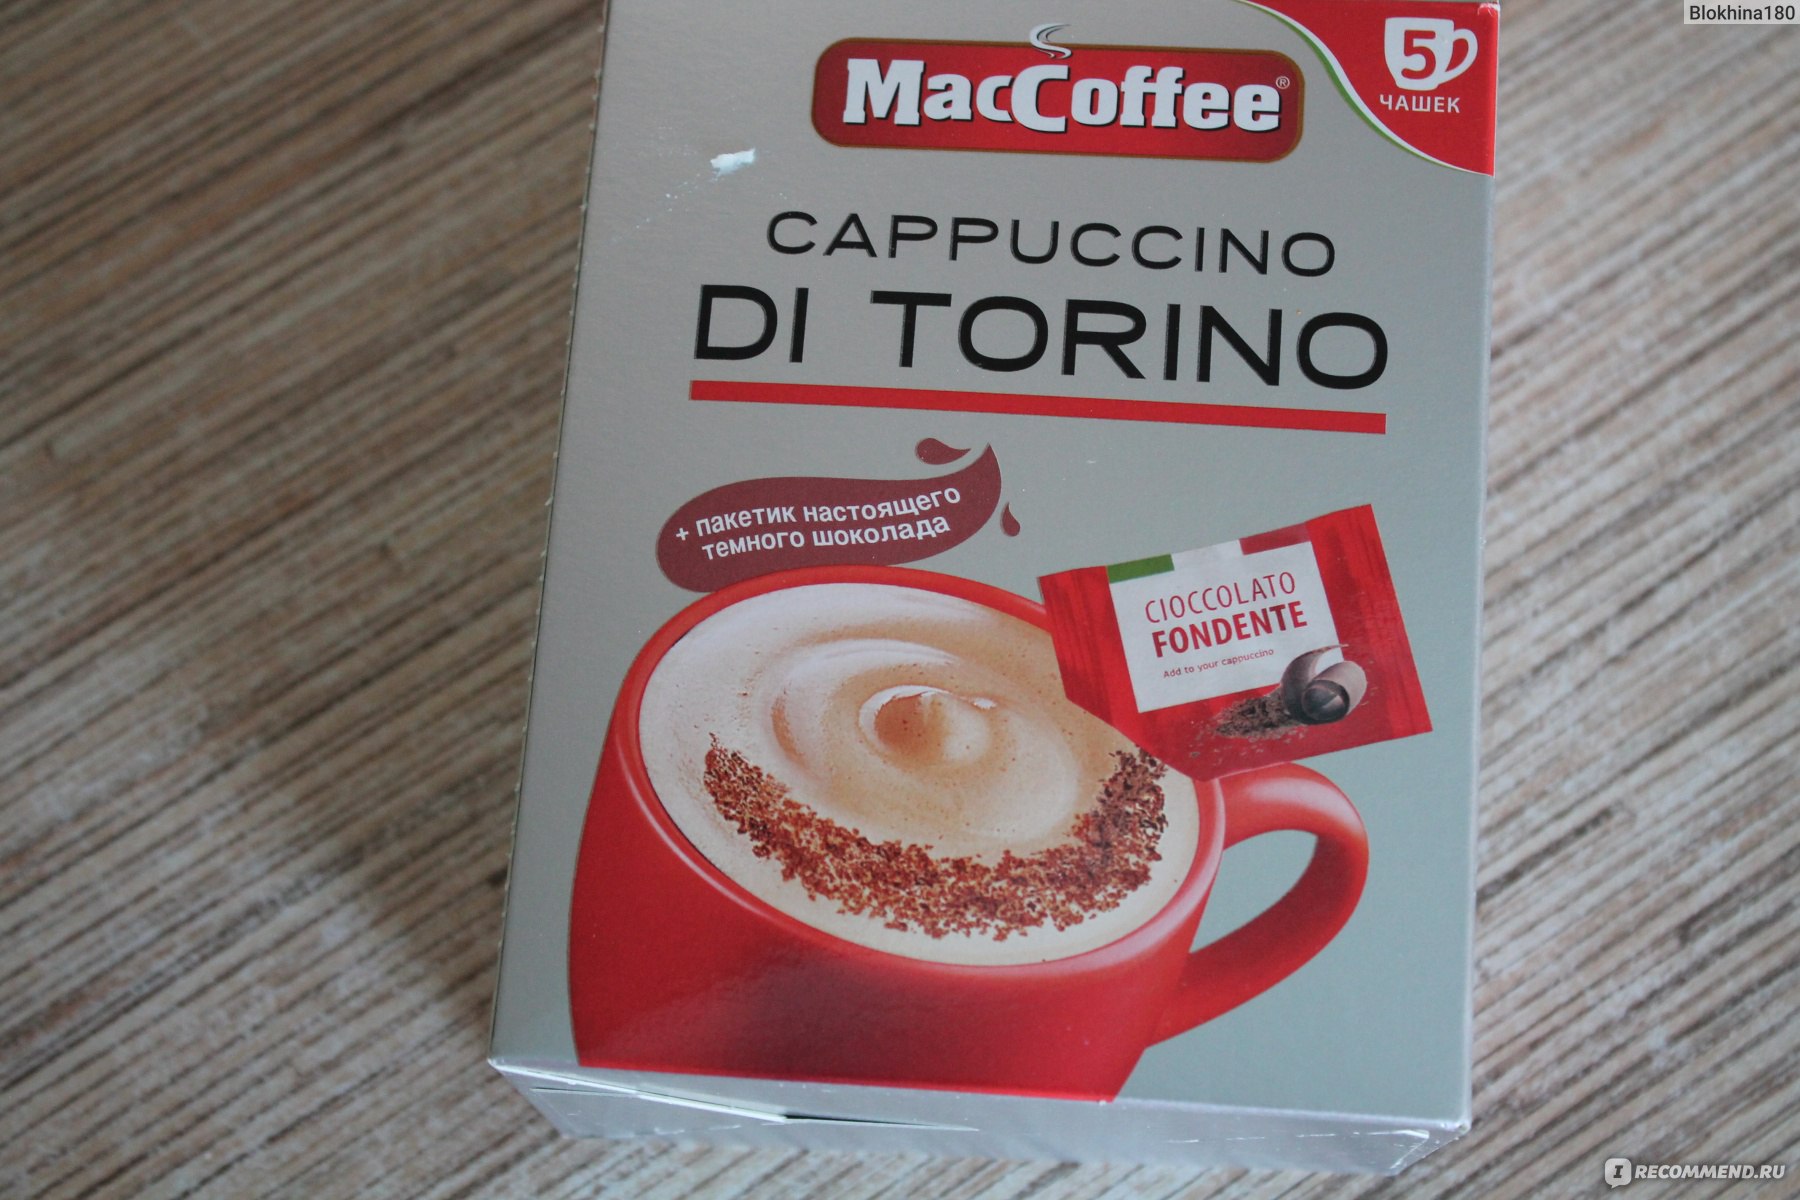 Маккофе торино. Кофе MACCOFFEE Cappuccino. Маккофе ди Торино. Капучино ди Торино. Растворимый кофе Маккофе капучино.